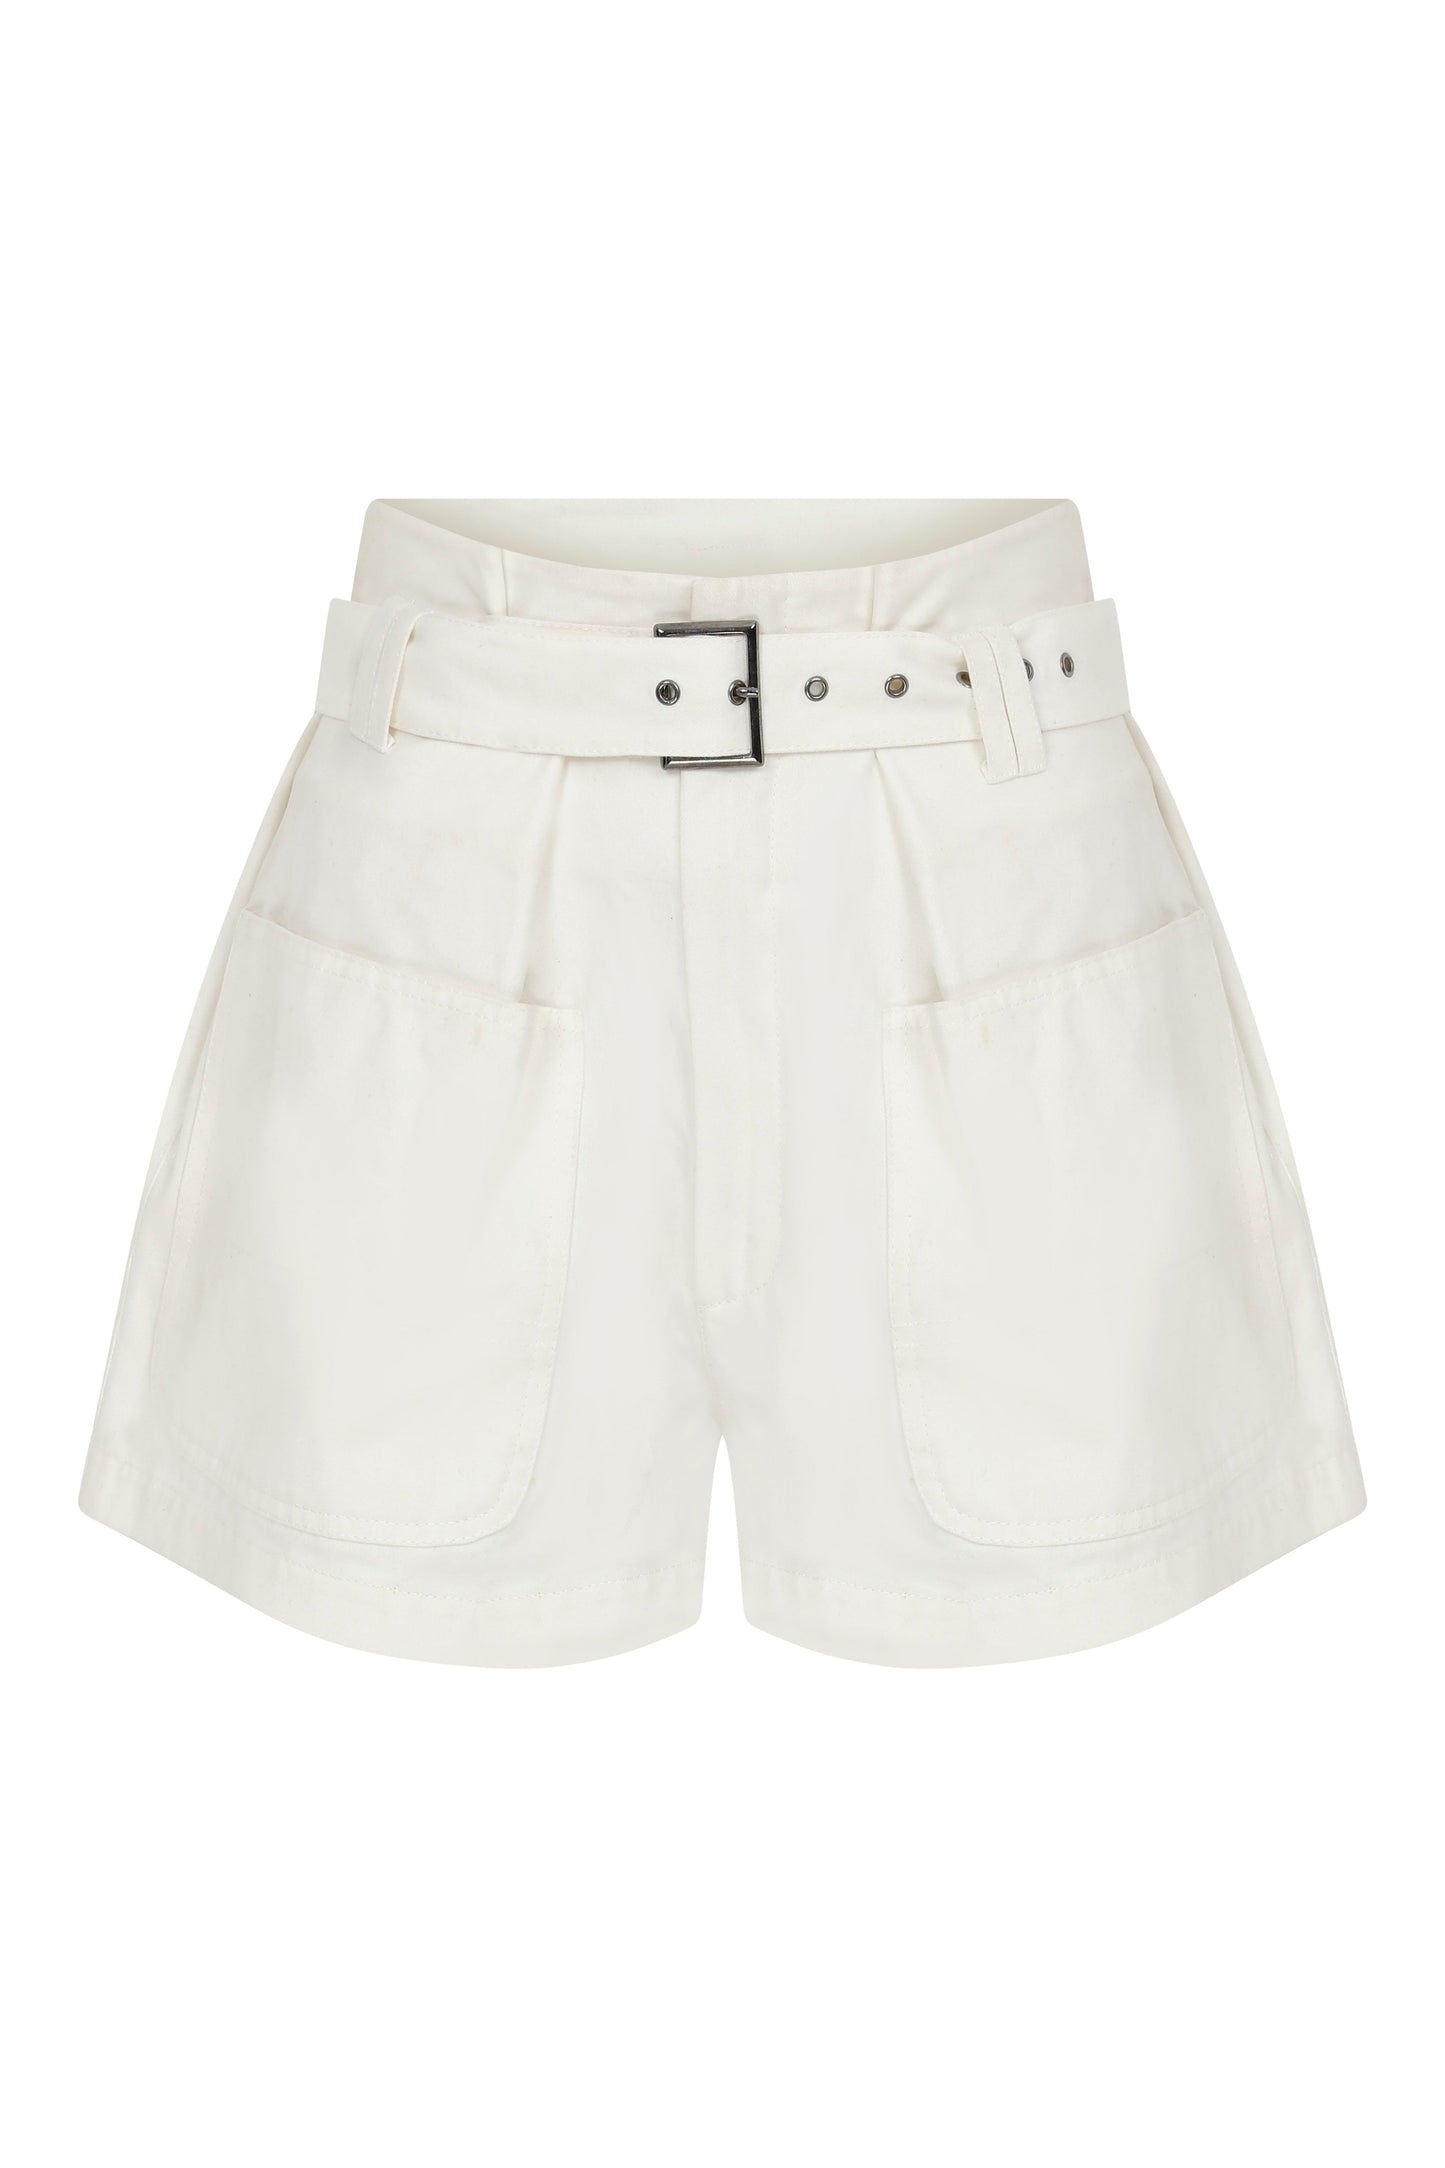 Louis White Cotton Shorts